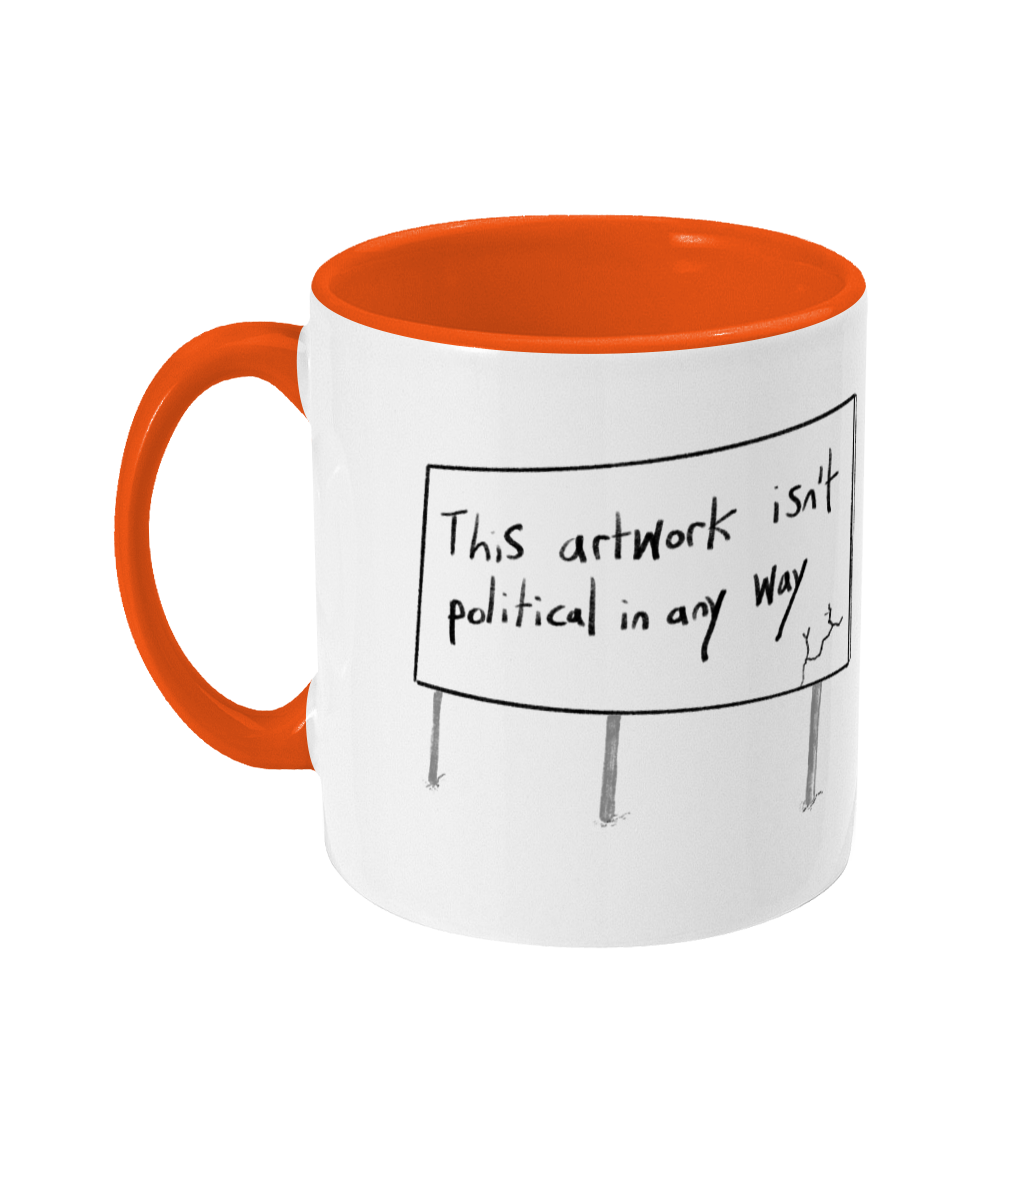 A non-political mug